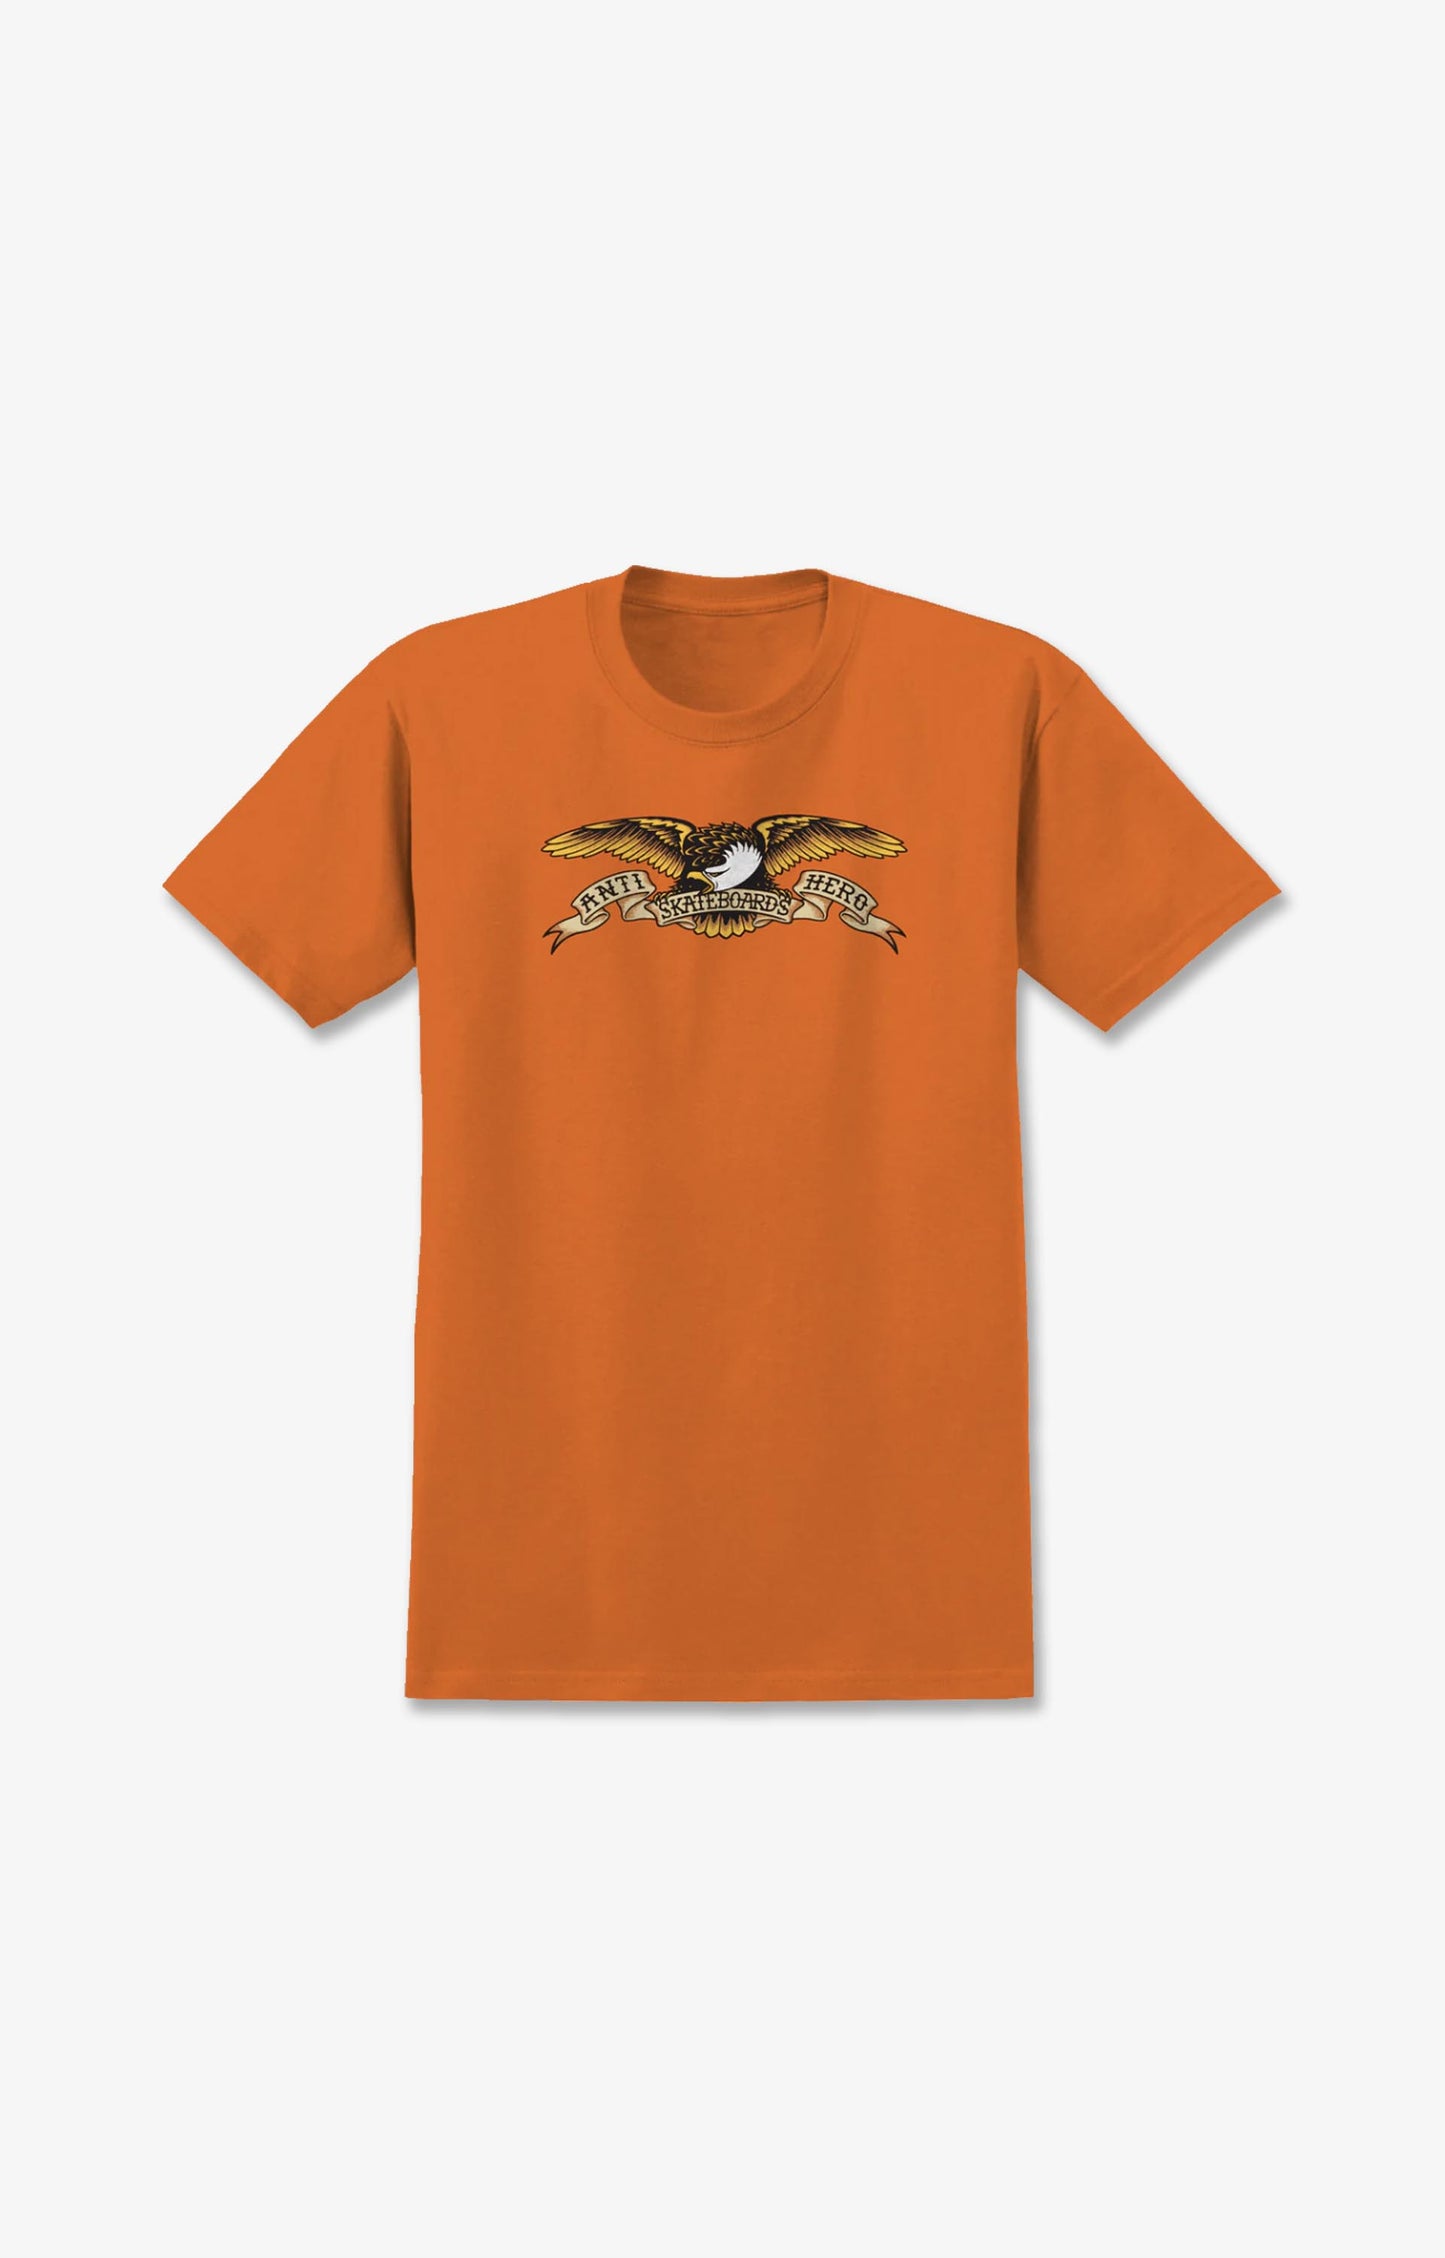 Anti Hero Eagle Youth T-Shirt, Orange